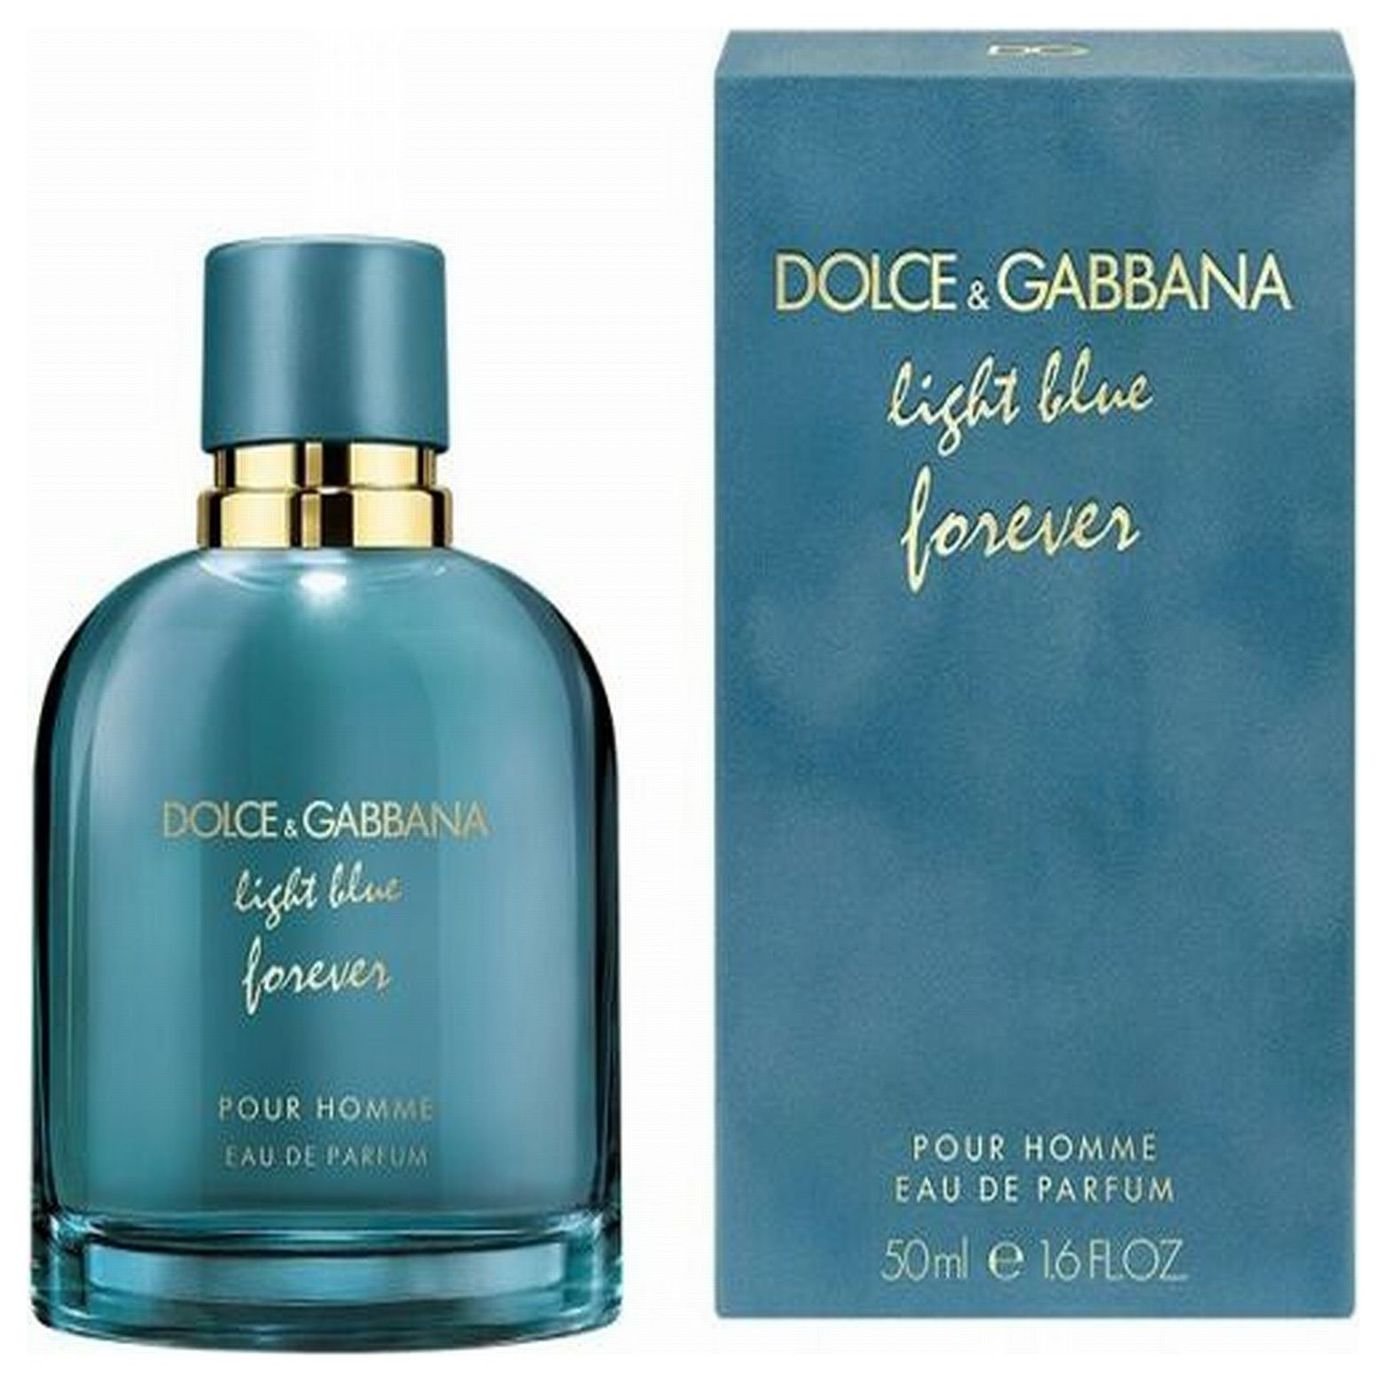 Dolce & Gabanna Light Blue Forever Homme Eau De Parfum -50ml